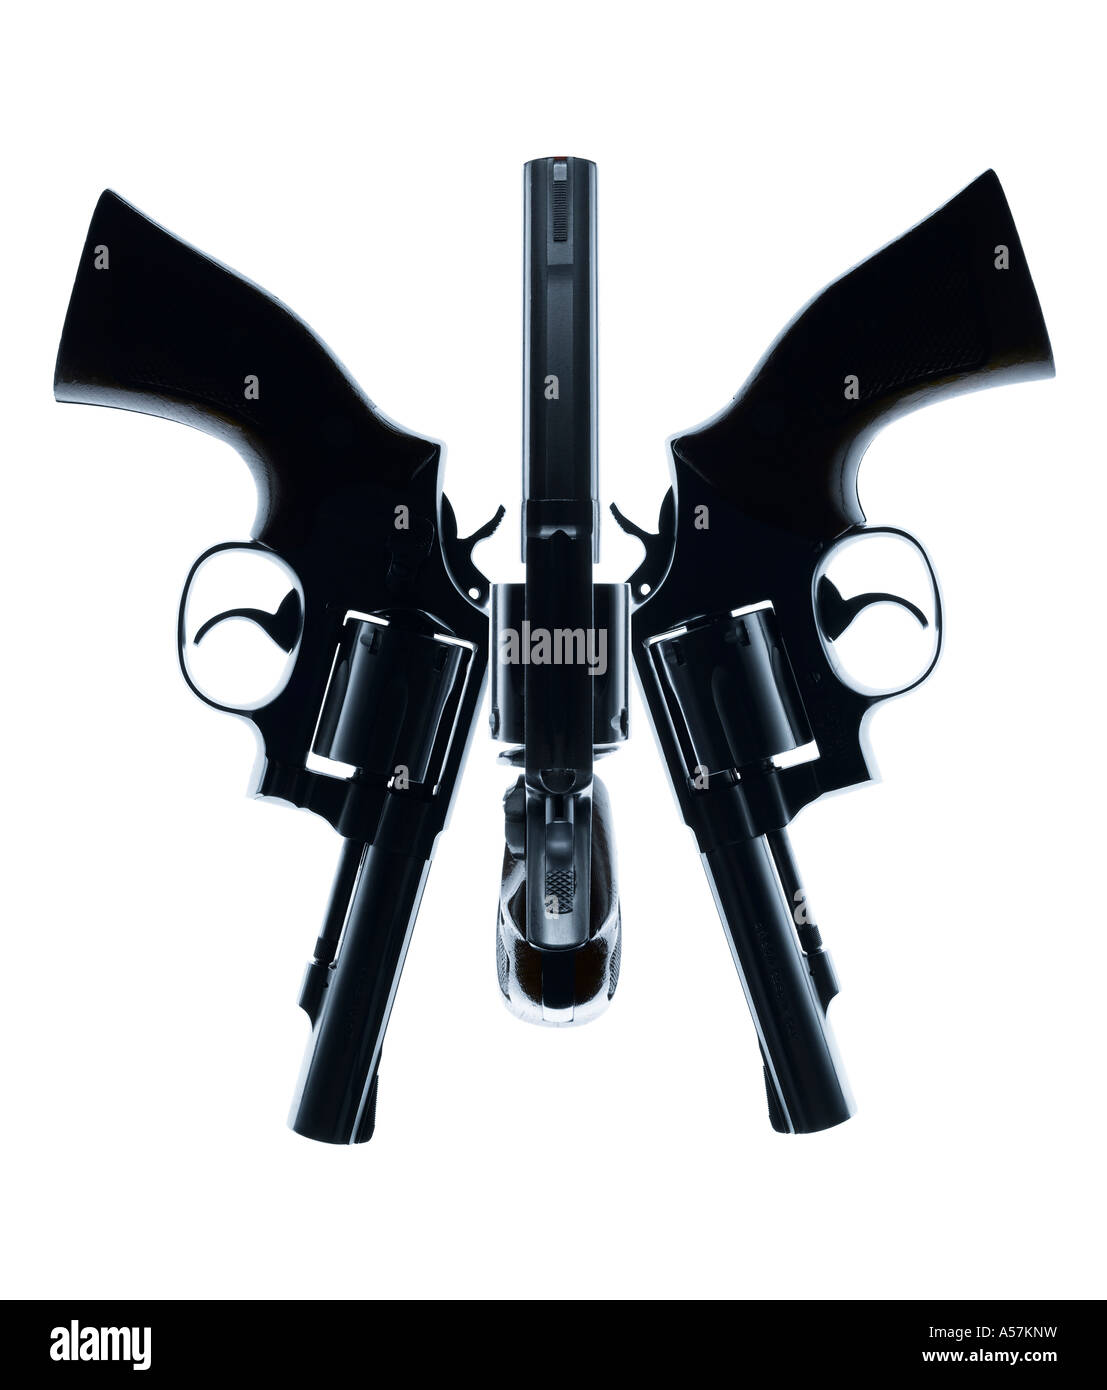 Drei Pistolen kreativ positioniert, um ein Gesicht oder eine interessante Form erstellen Stockfoto